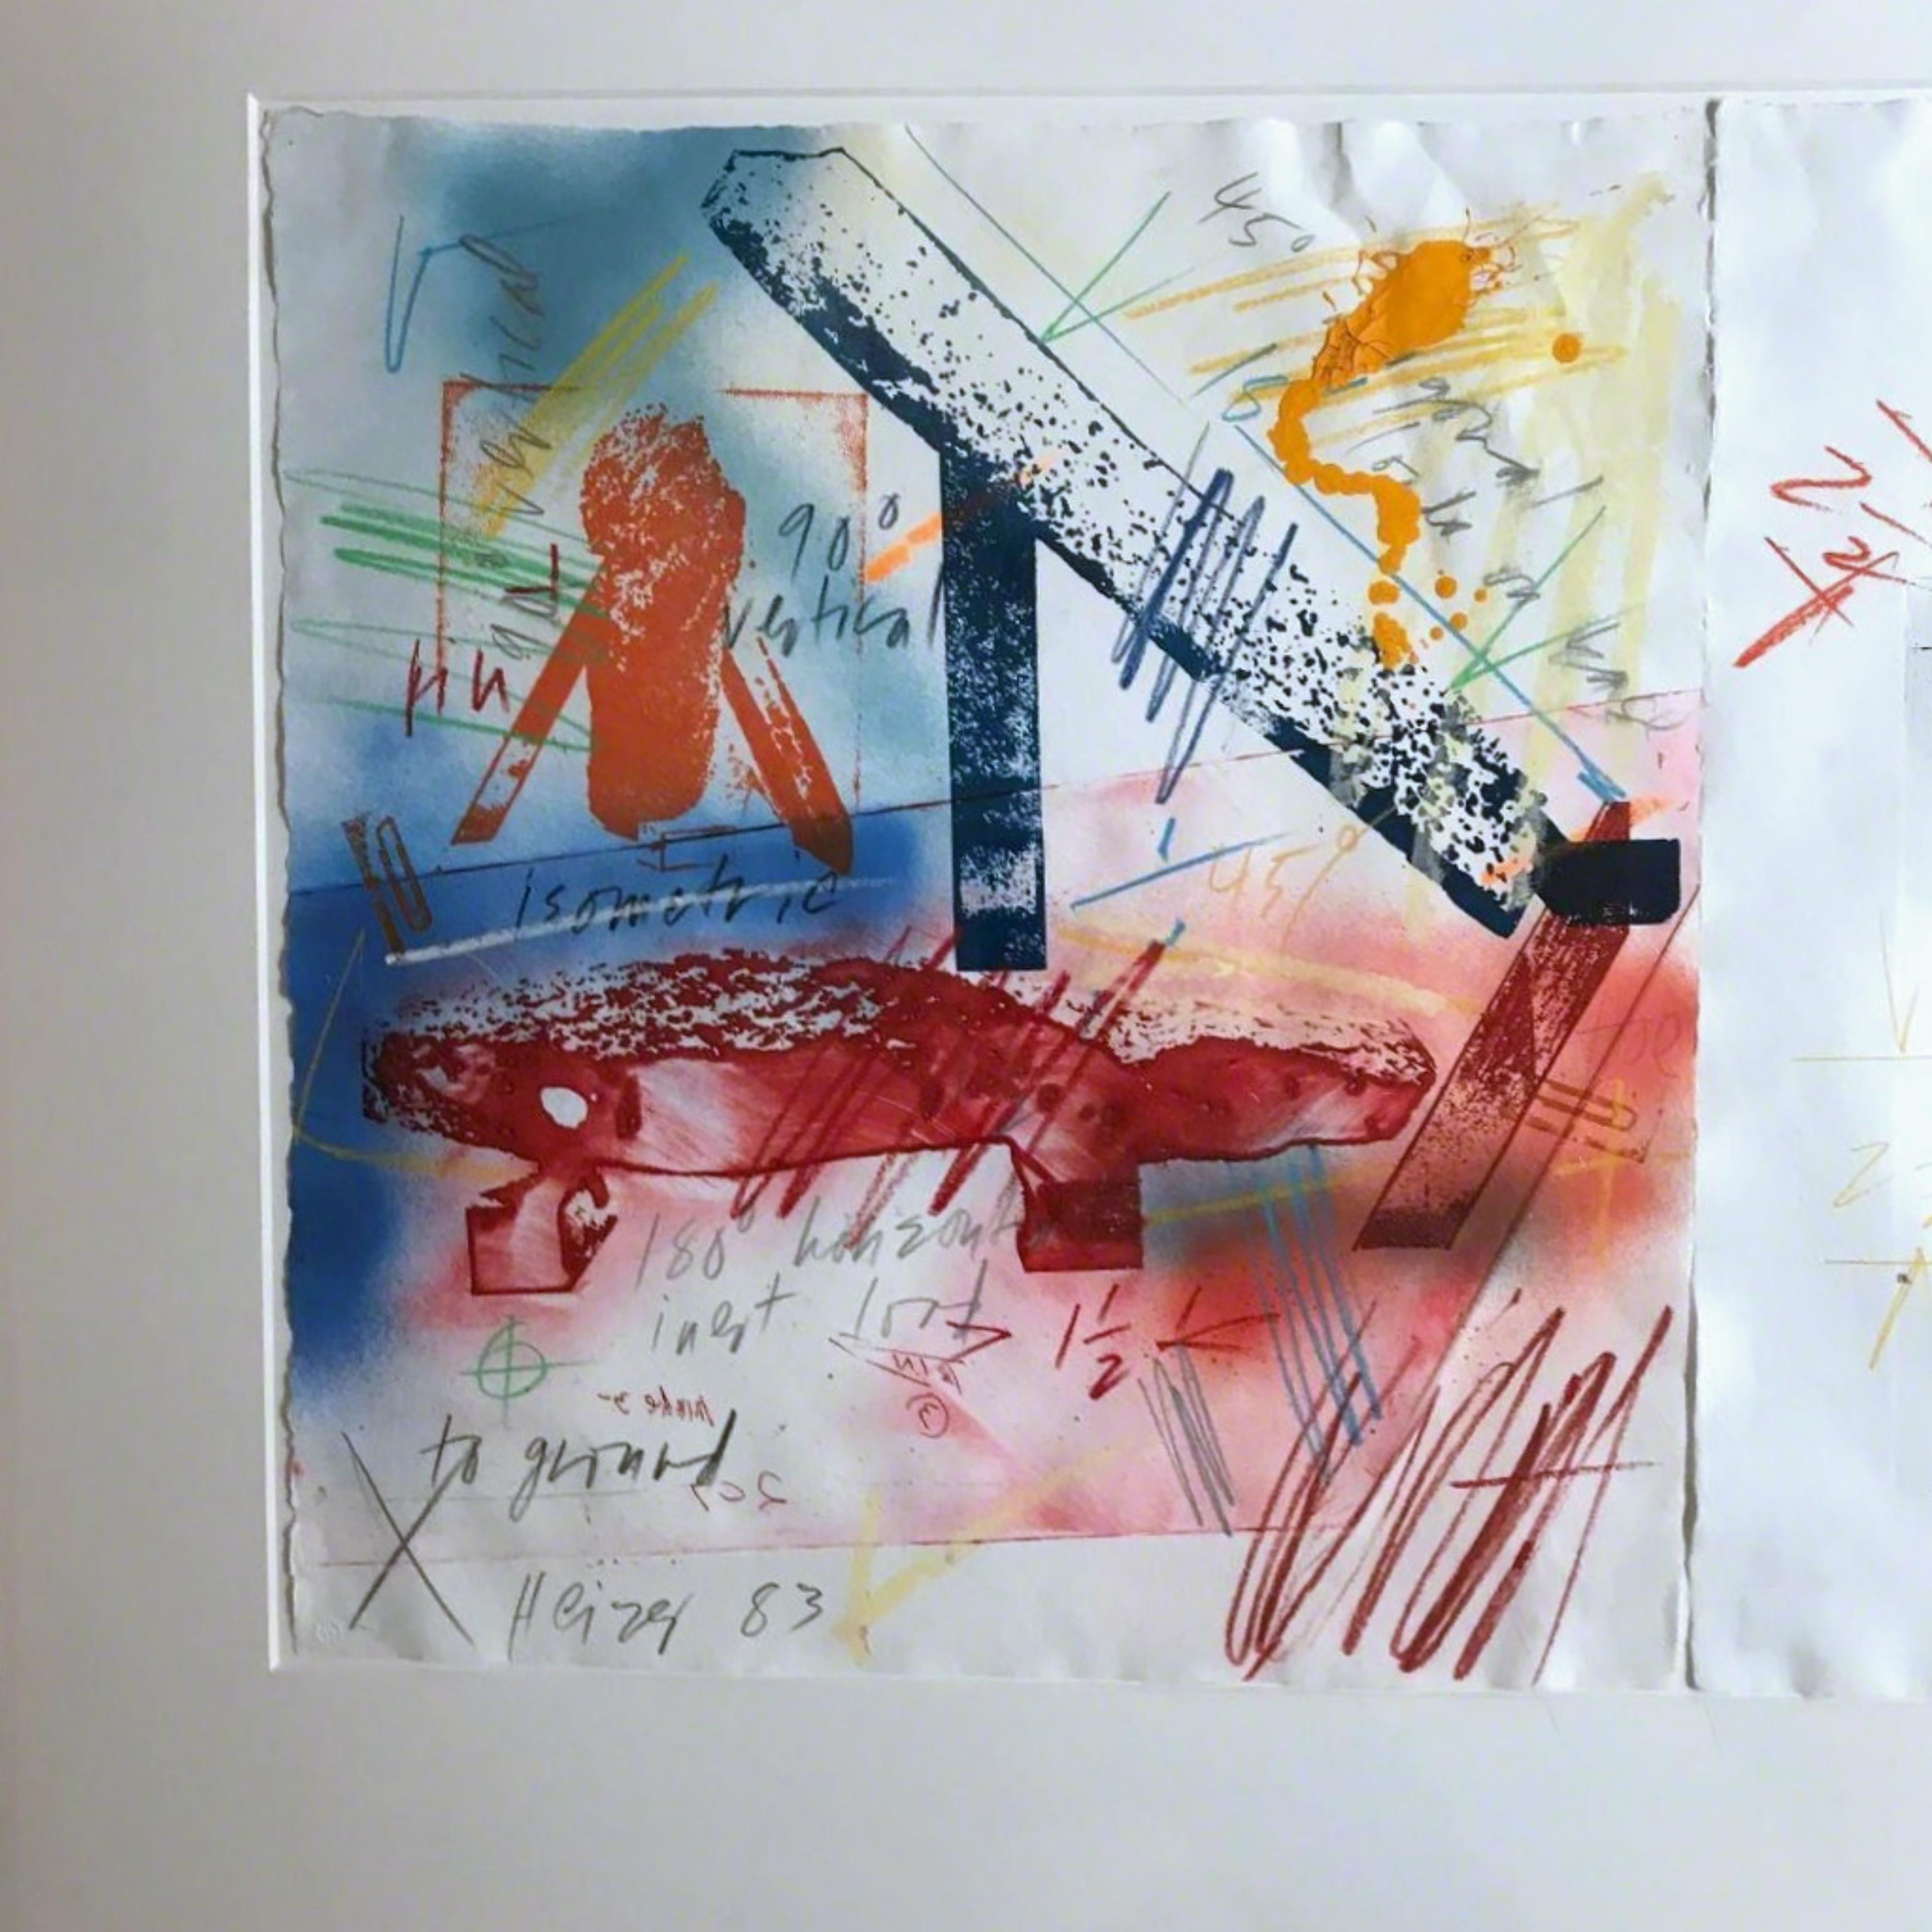 III-8  (composition monoimpression signée à la main sur deux feuilles individuelles)  - Art de Michael Heizer